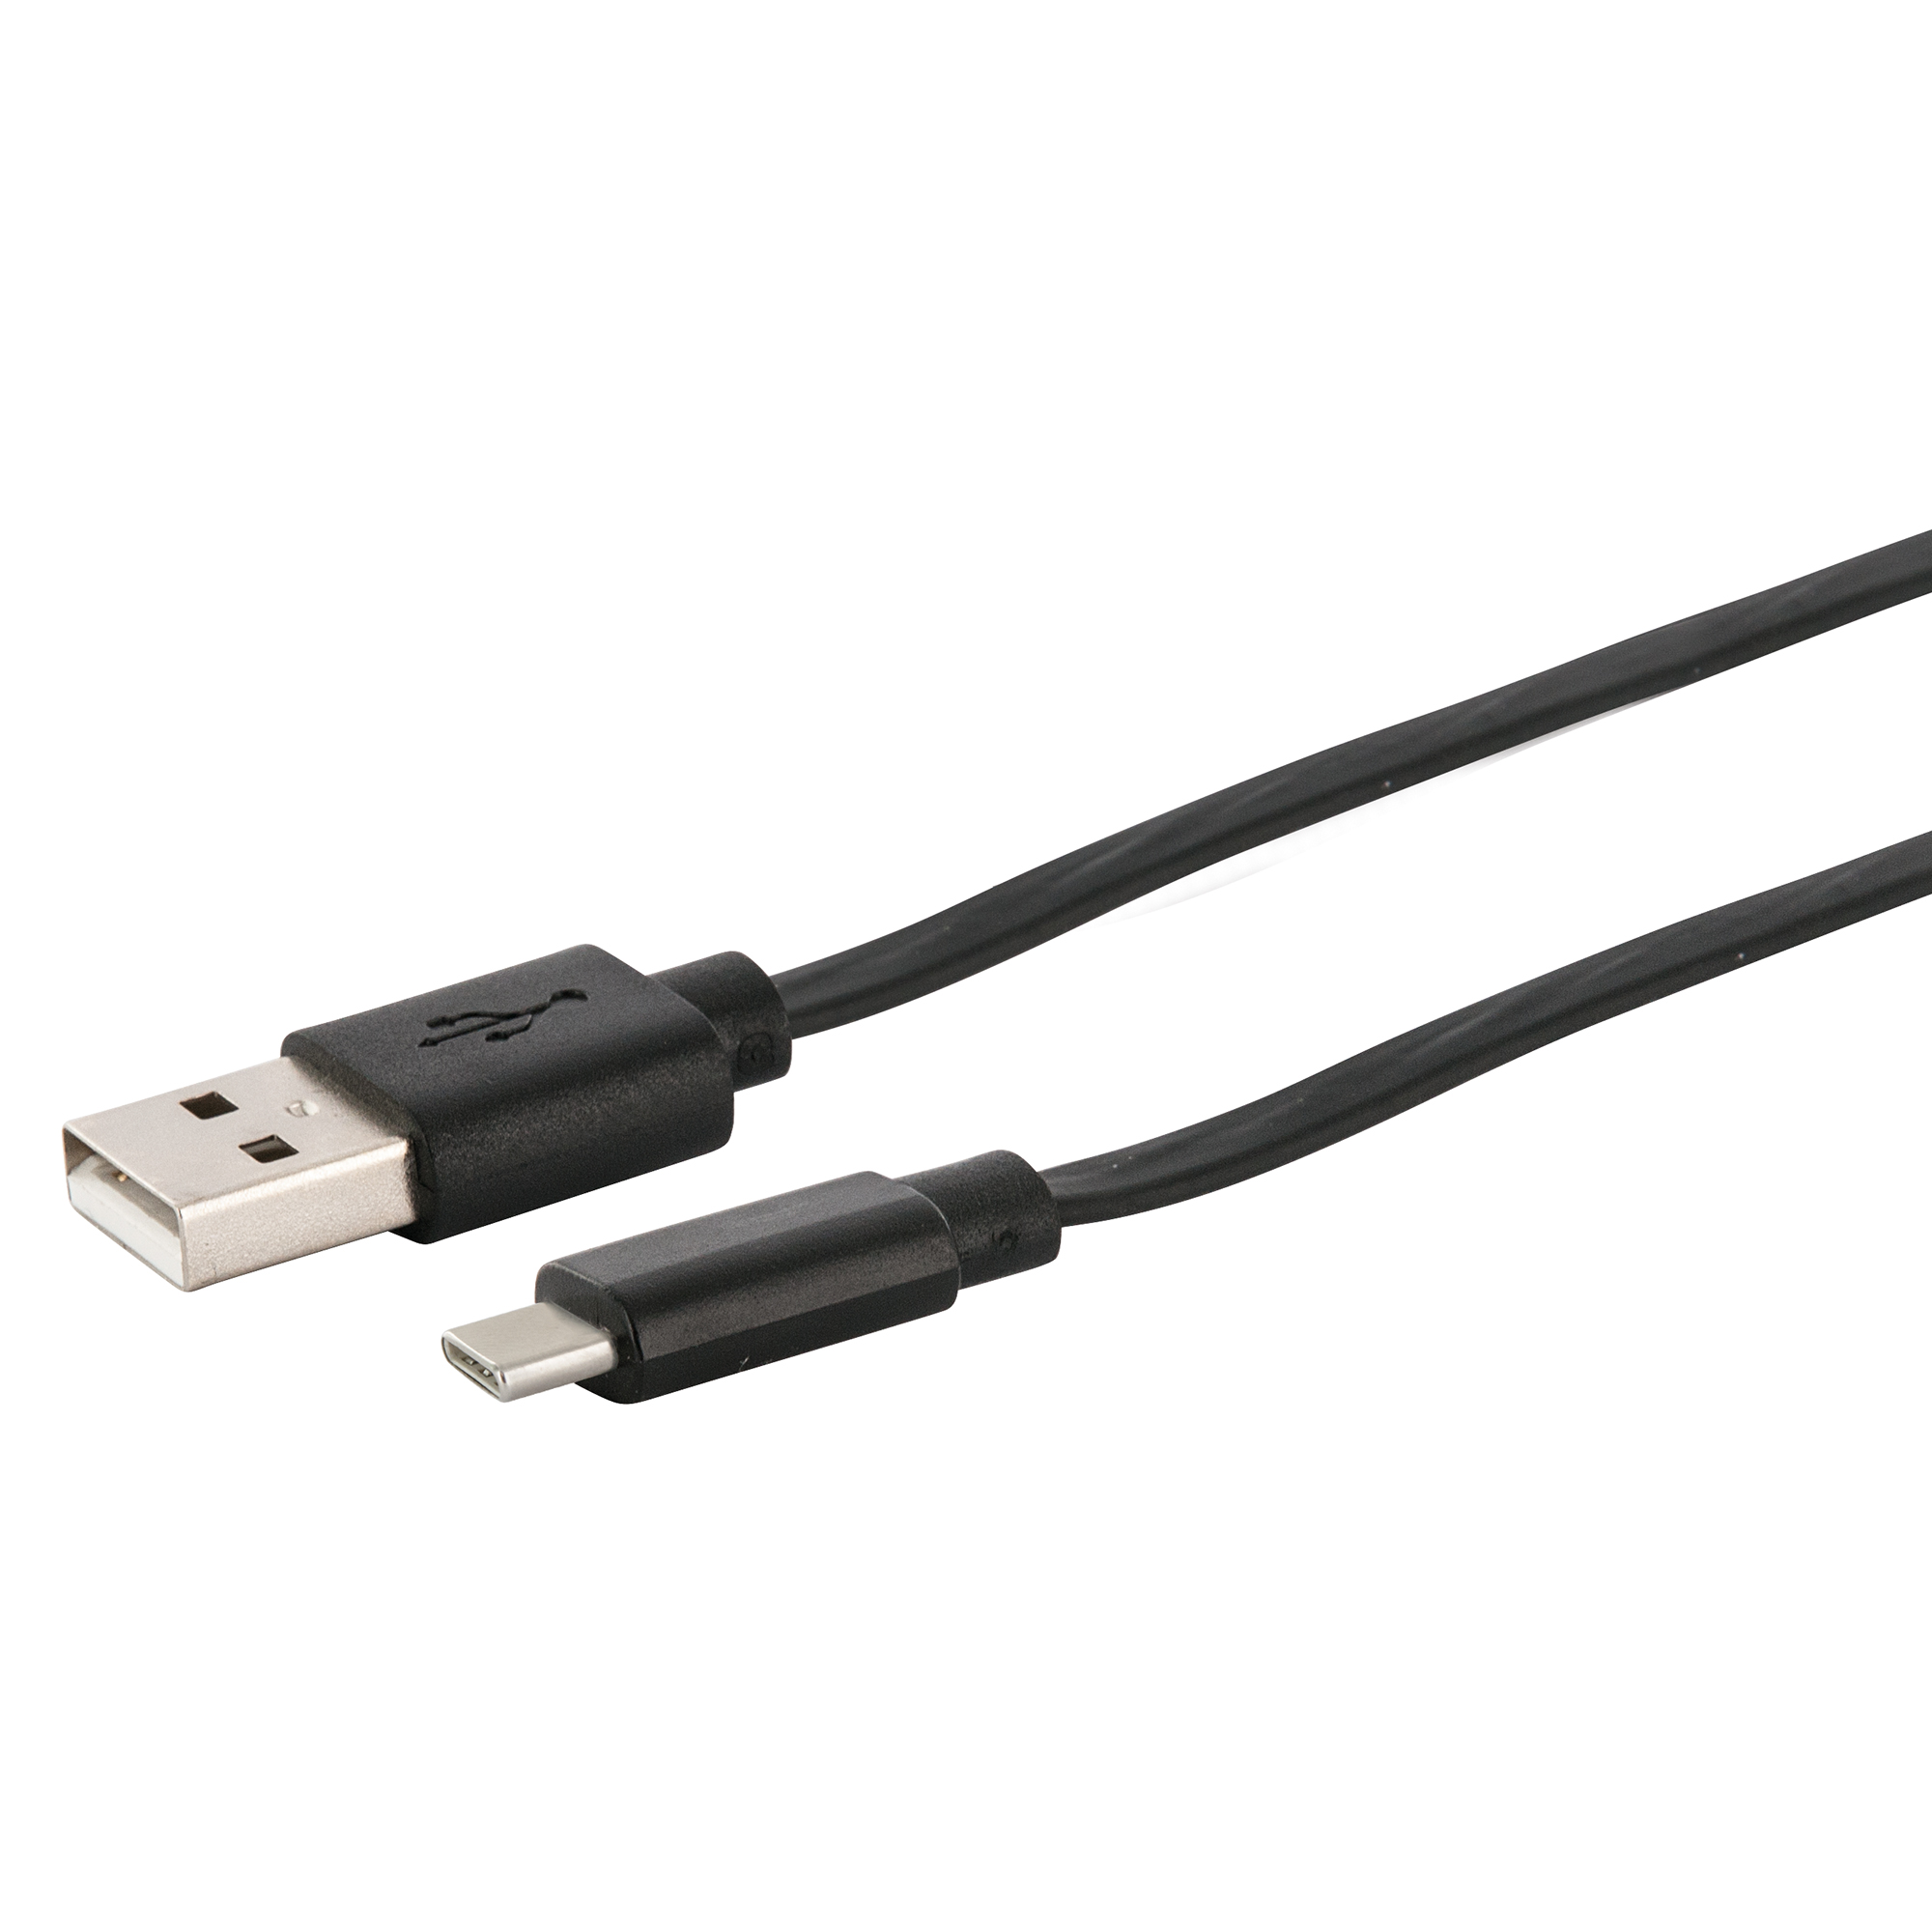 Sync- & Ladekabel USB A > USB C, ausziehbar + product picture